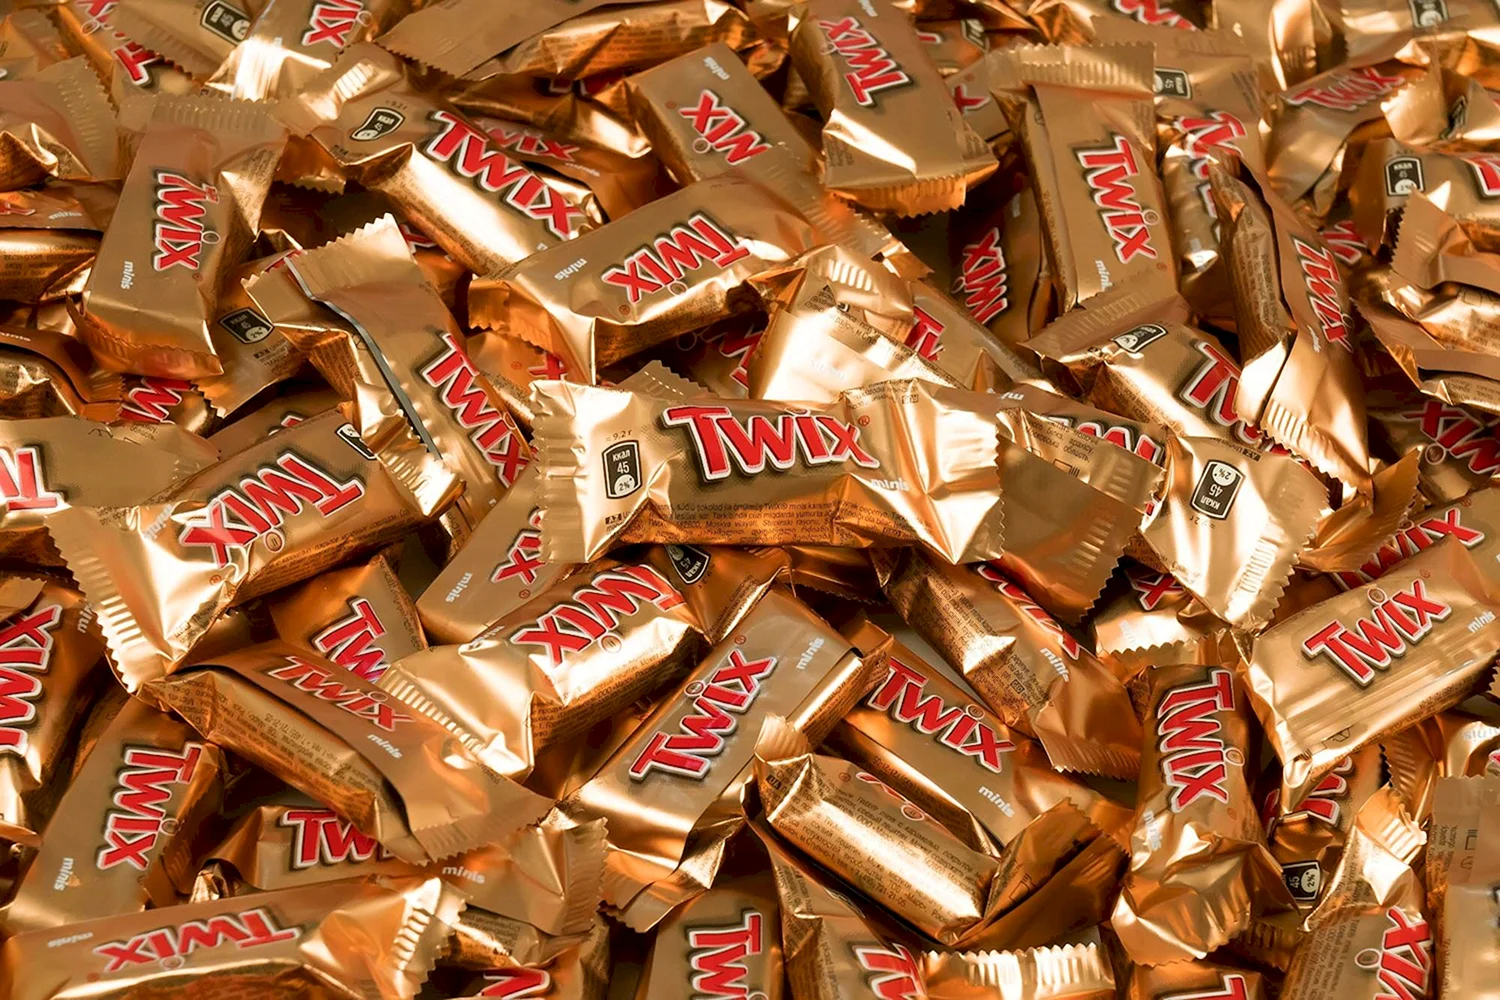 Шоколадные батончики Twix Minis 184г